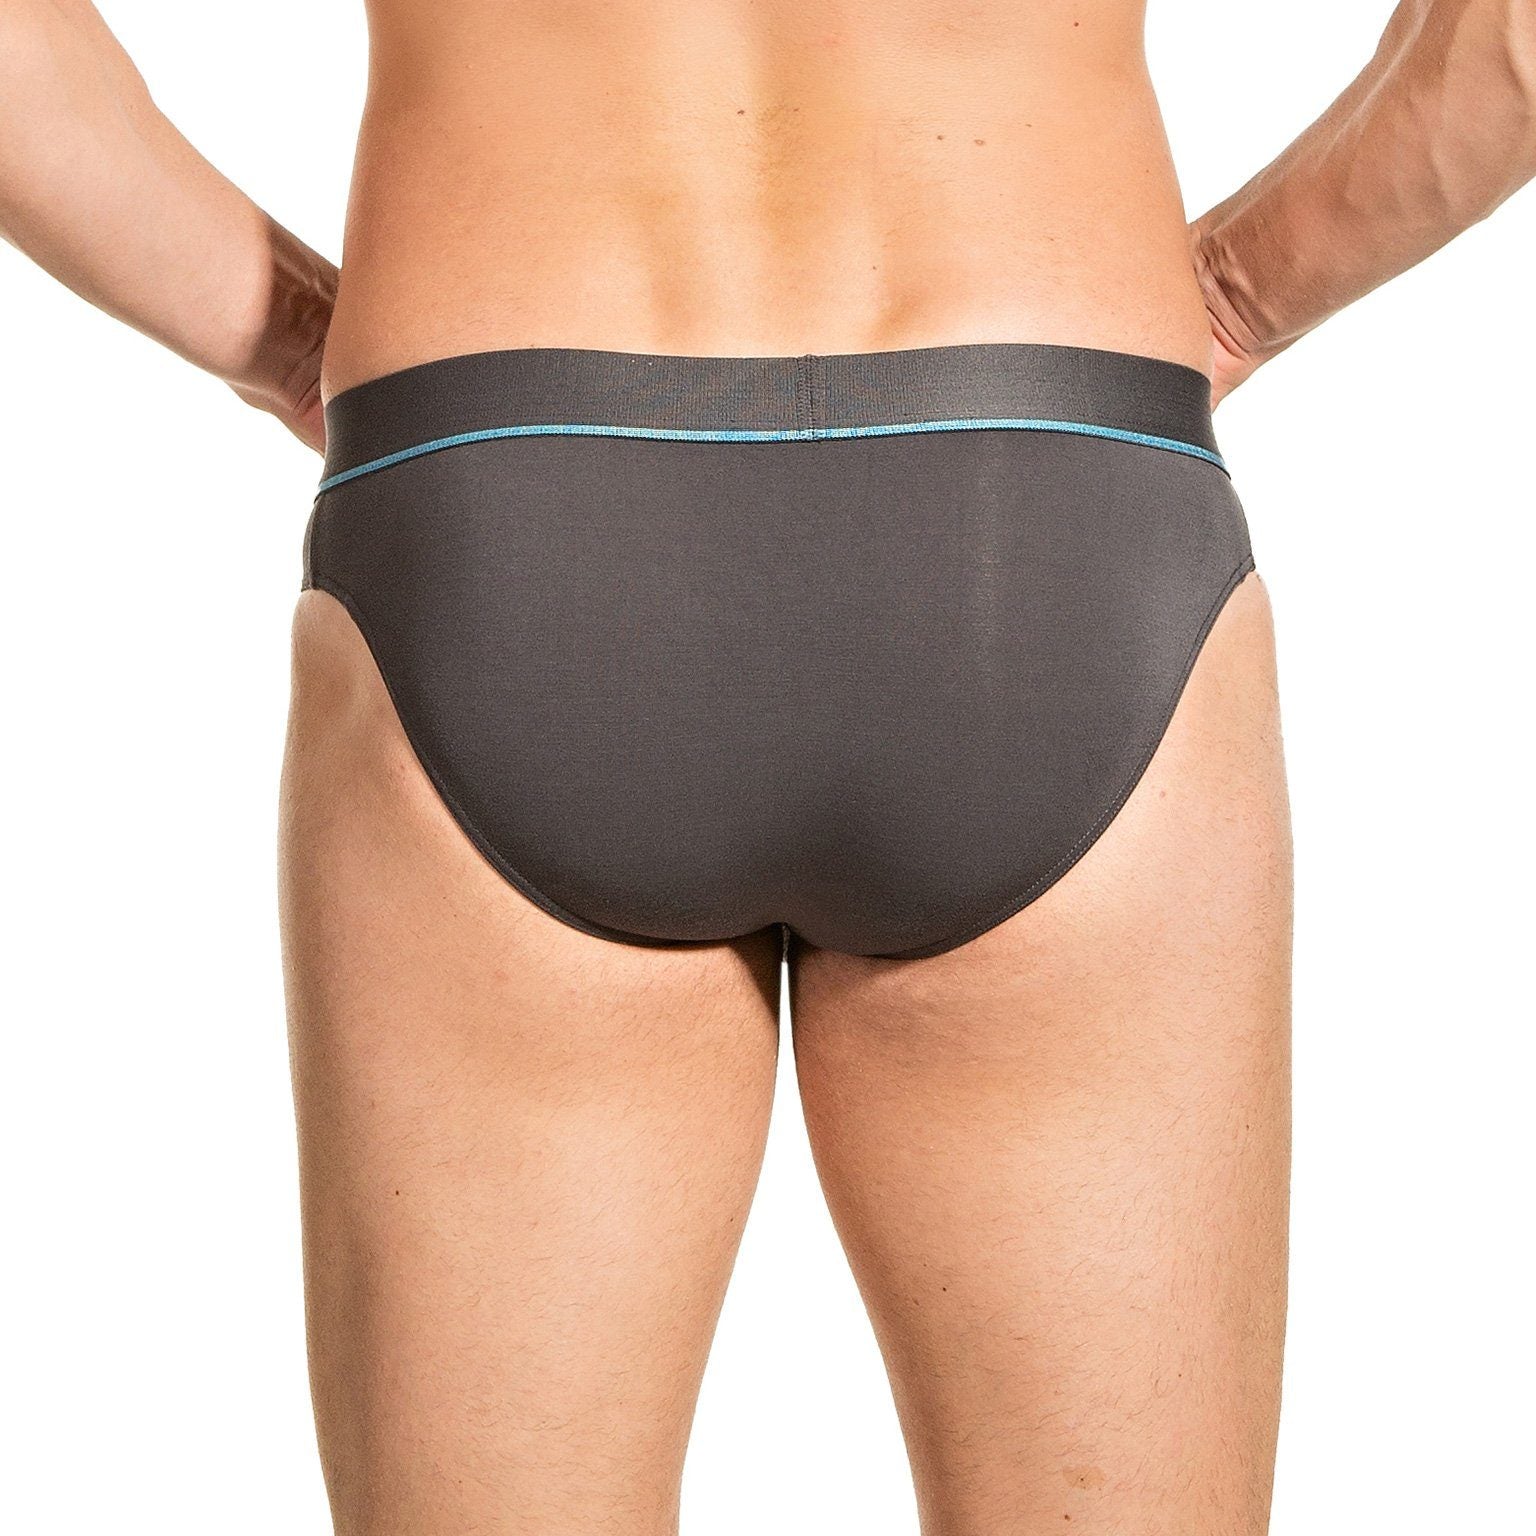 Underwear Suggestion: Obviously Apparel - PrimeMan Hipster Briefs